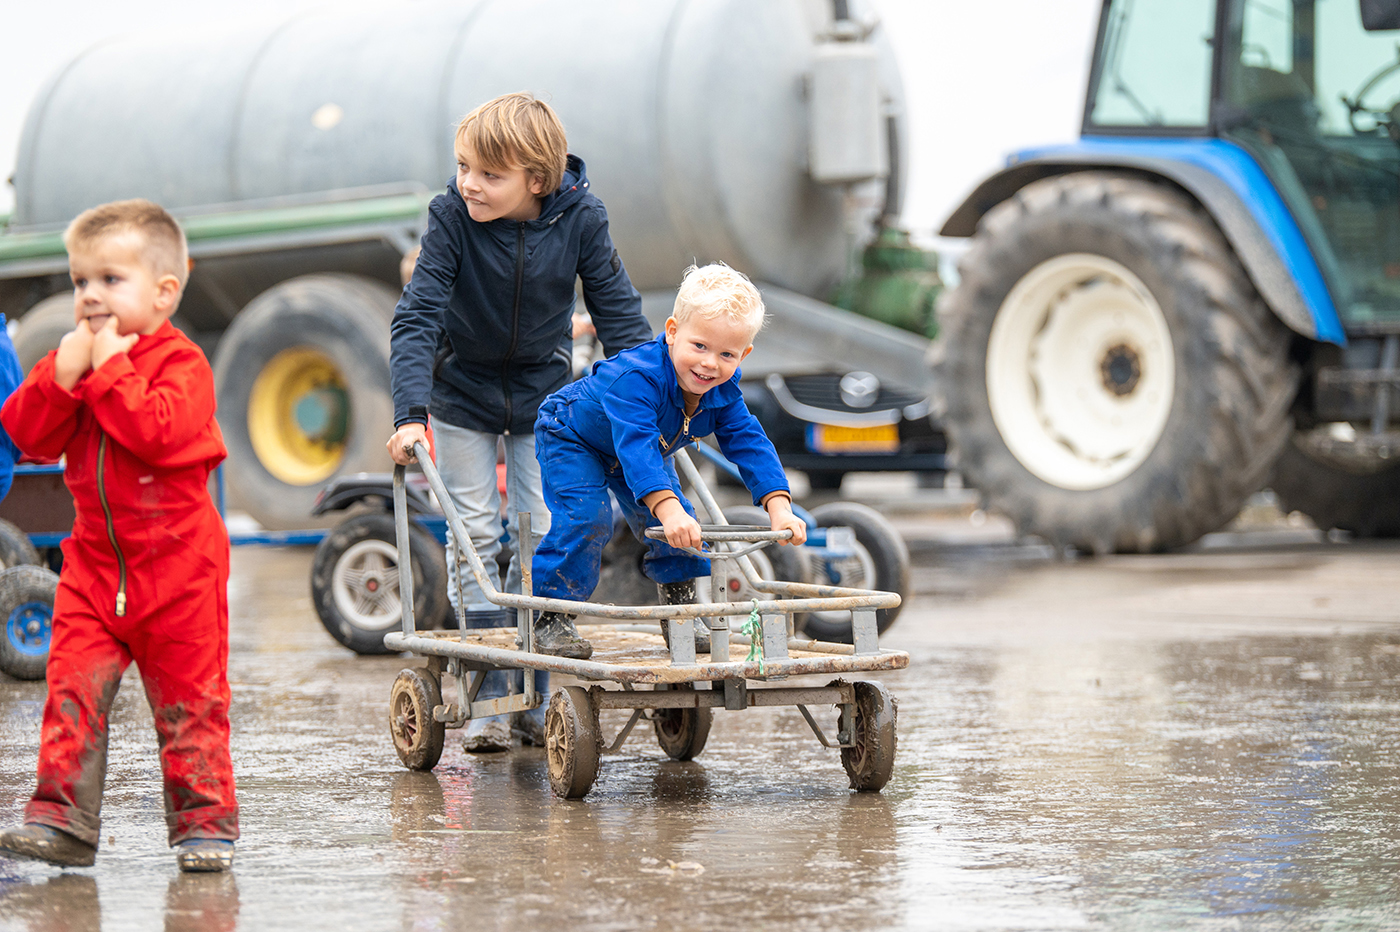 Uitje met kinderen in Noord-Holland. kinderen met skelter op pruttige ondergrond, op achtergrond landbouwvoertuigen